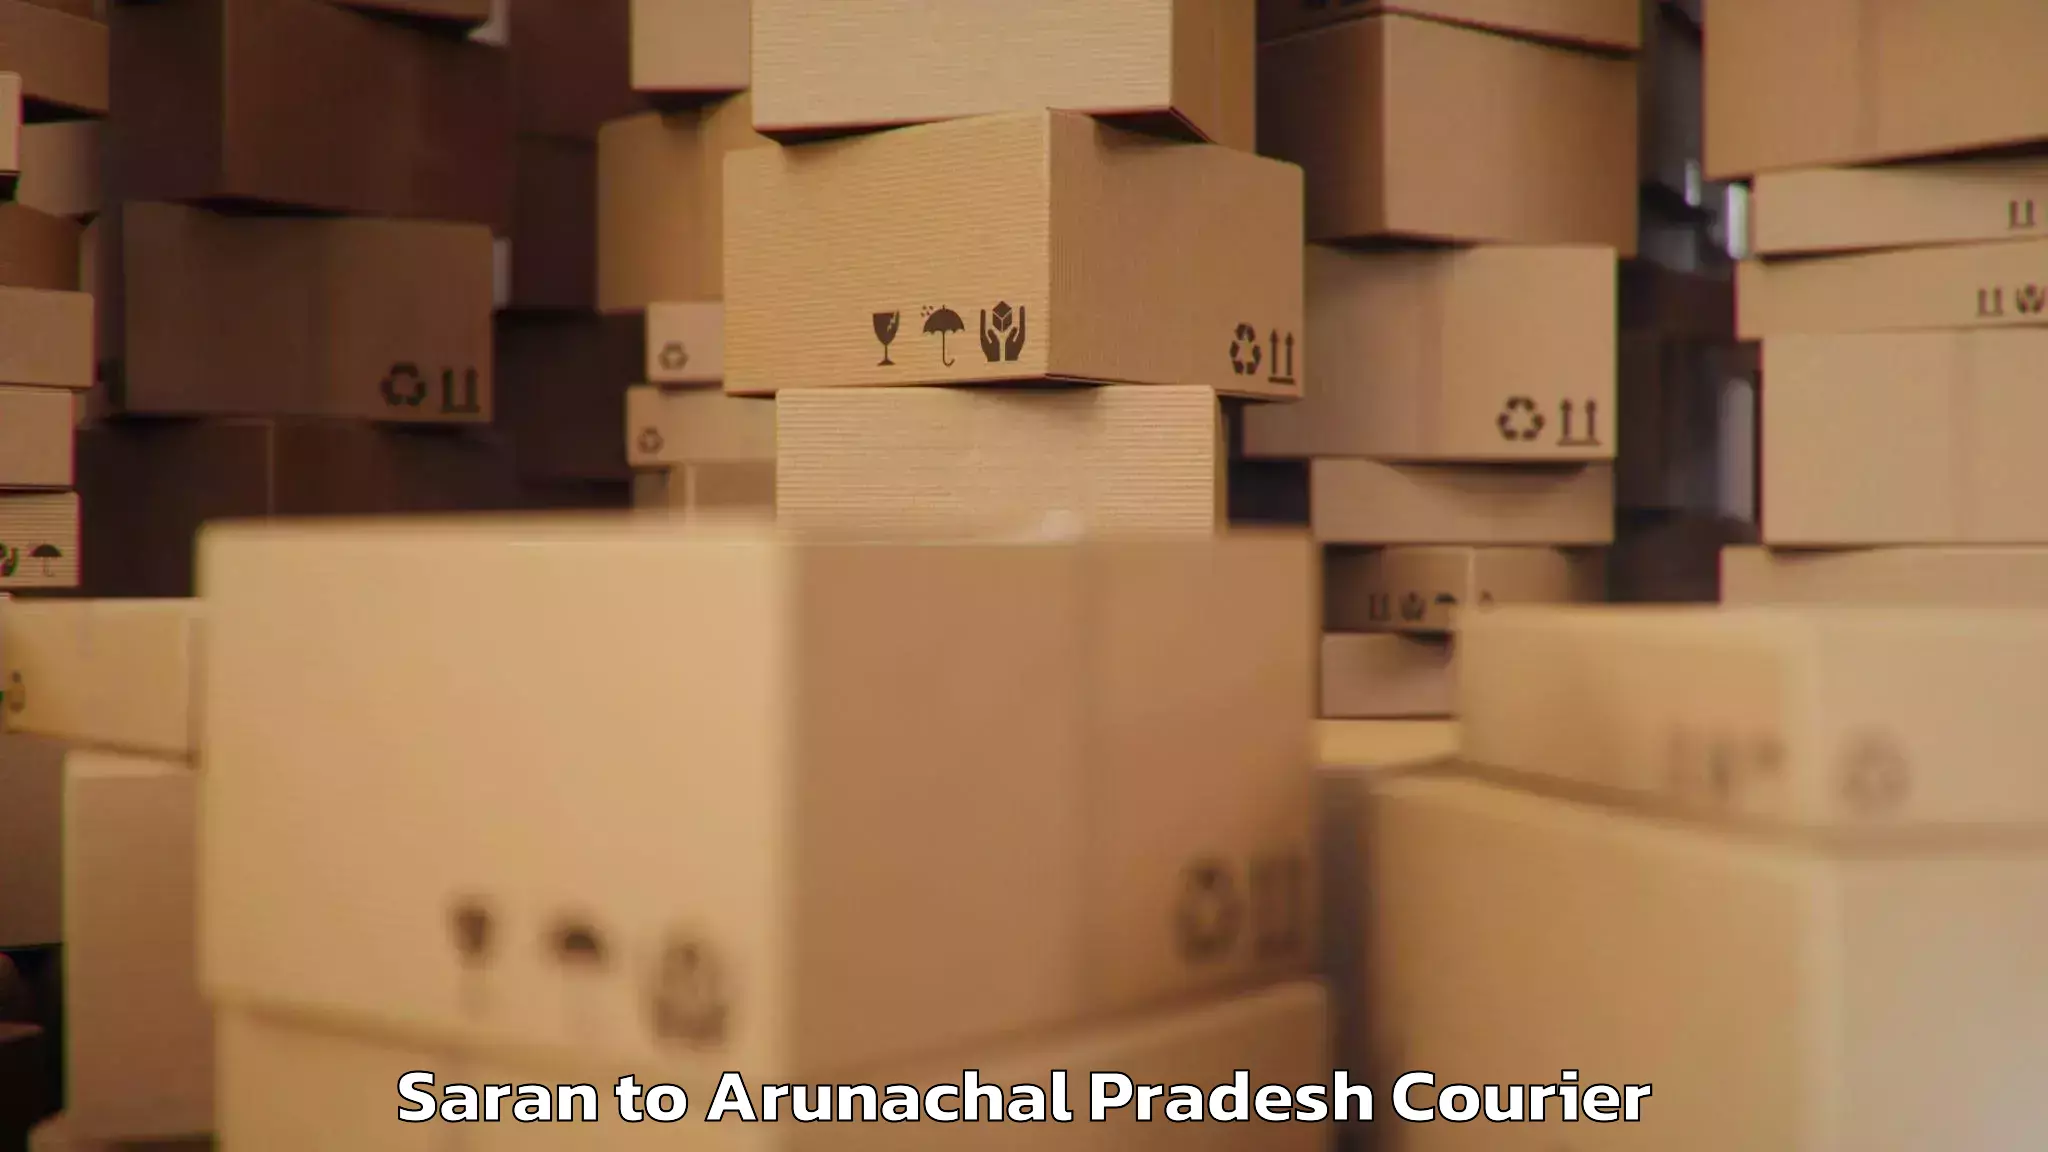 Baggage shipping experience Saran to Arunachal Pradesh